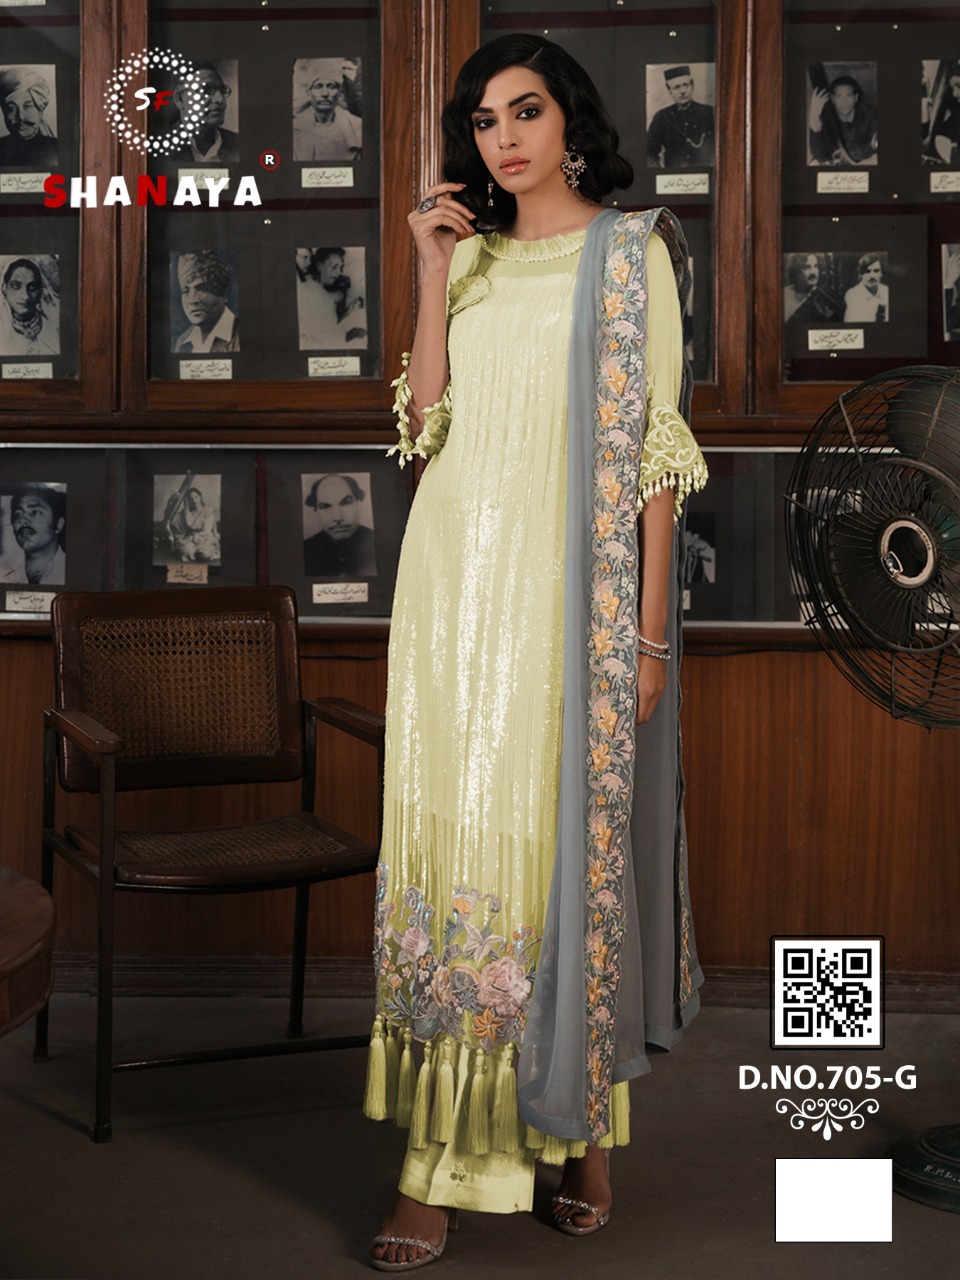 shanaya d no 705 g georgget exclusive look salwar suit singal